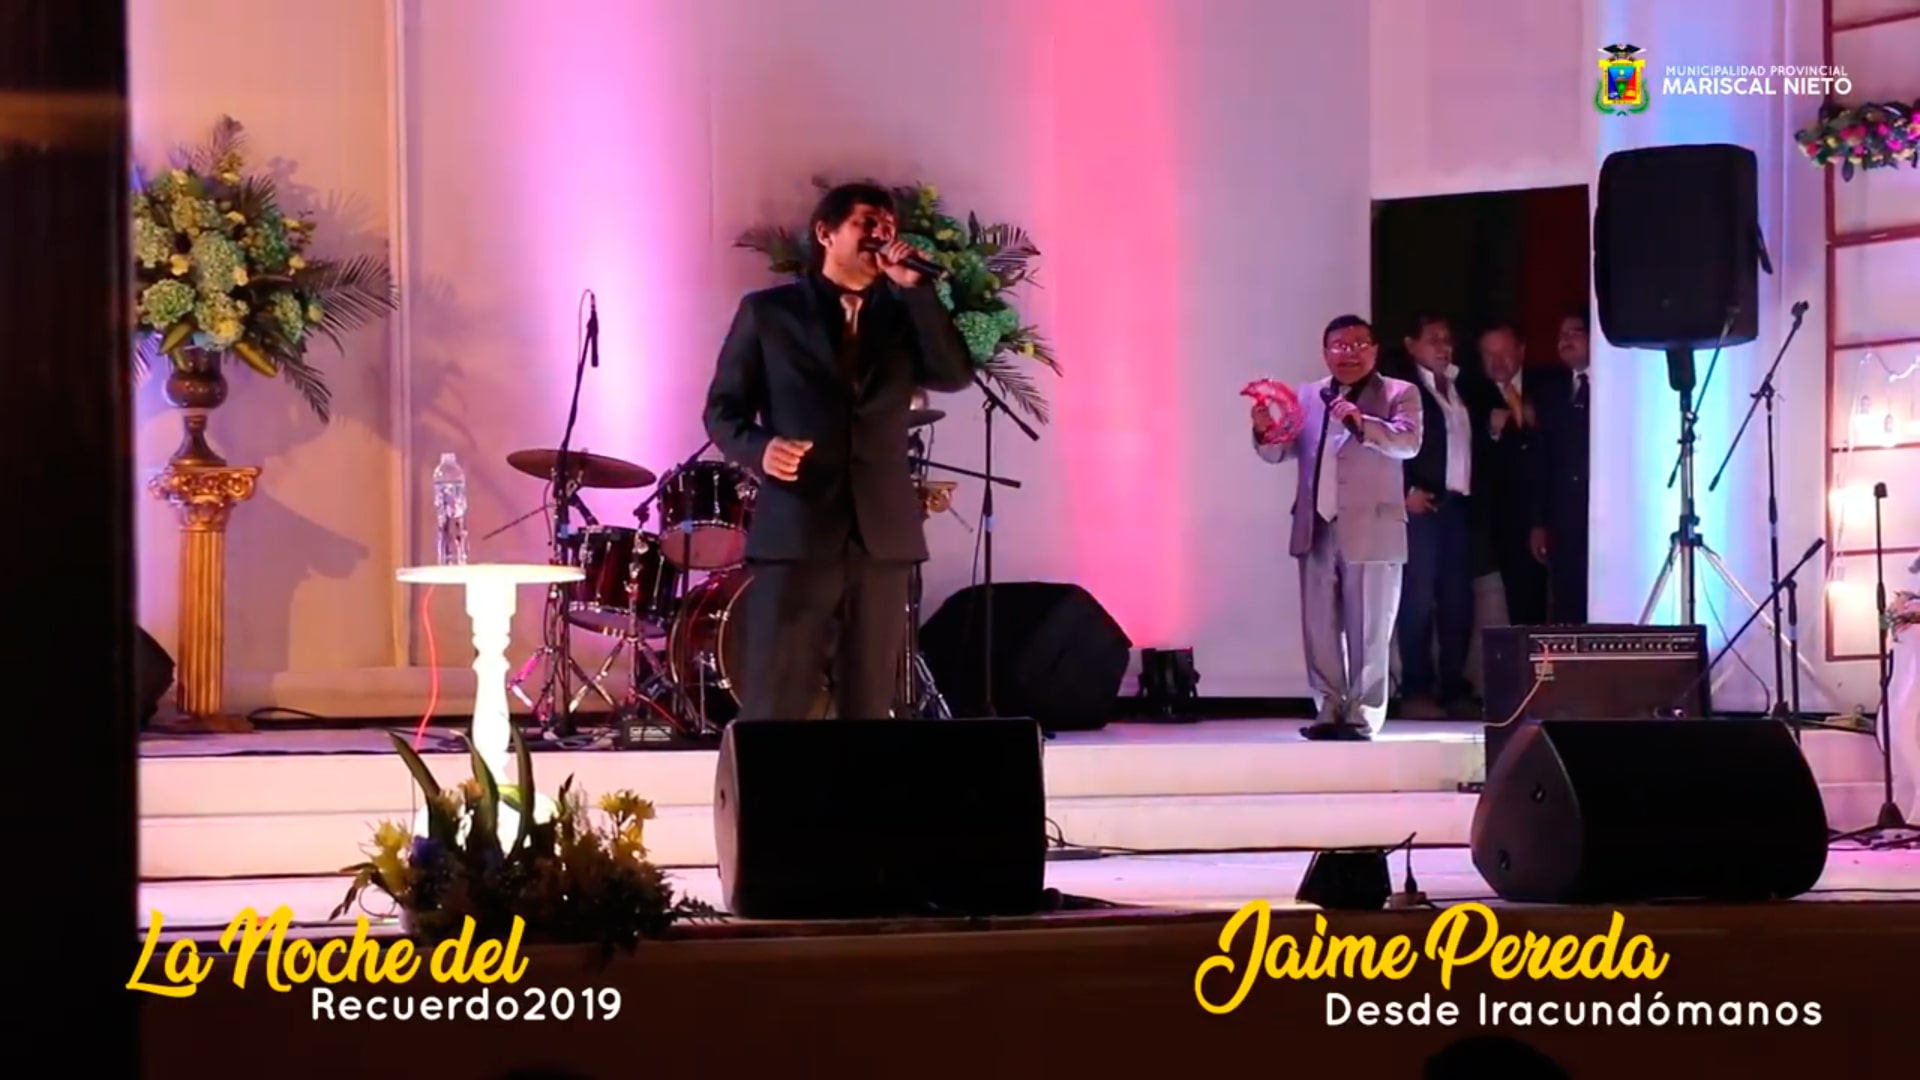 Jaime Pereda en la Noche del Recuerdo - Moquegua Peru 2019